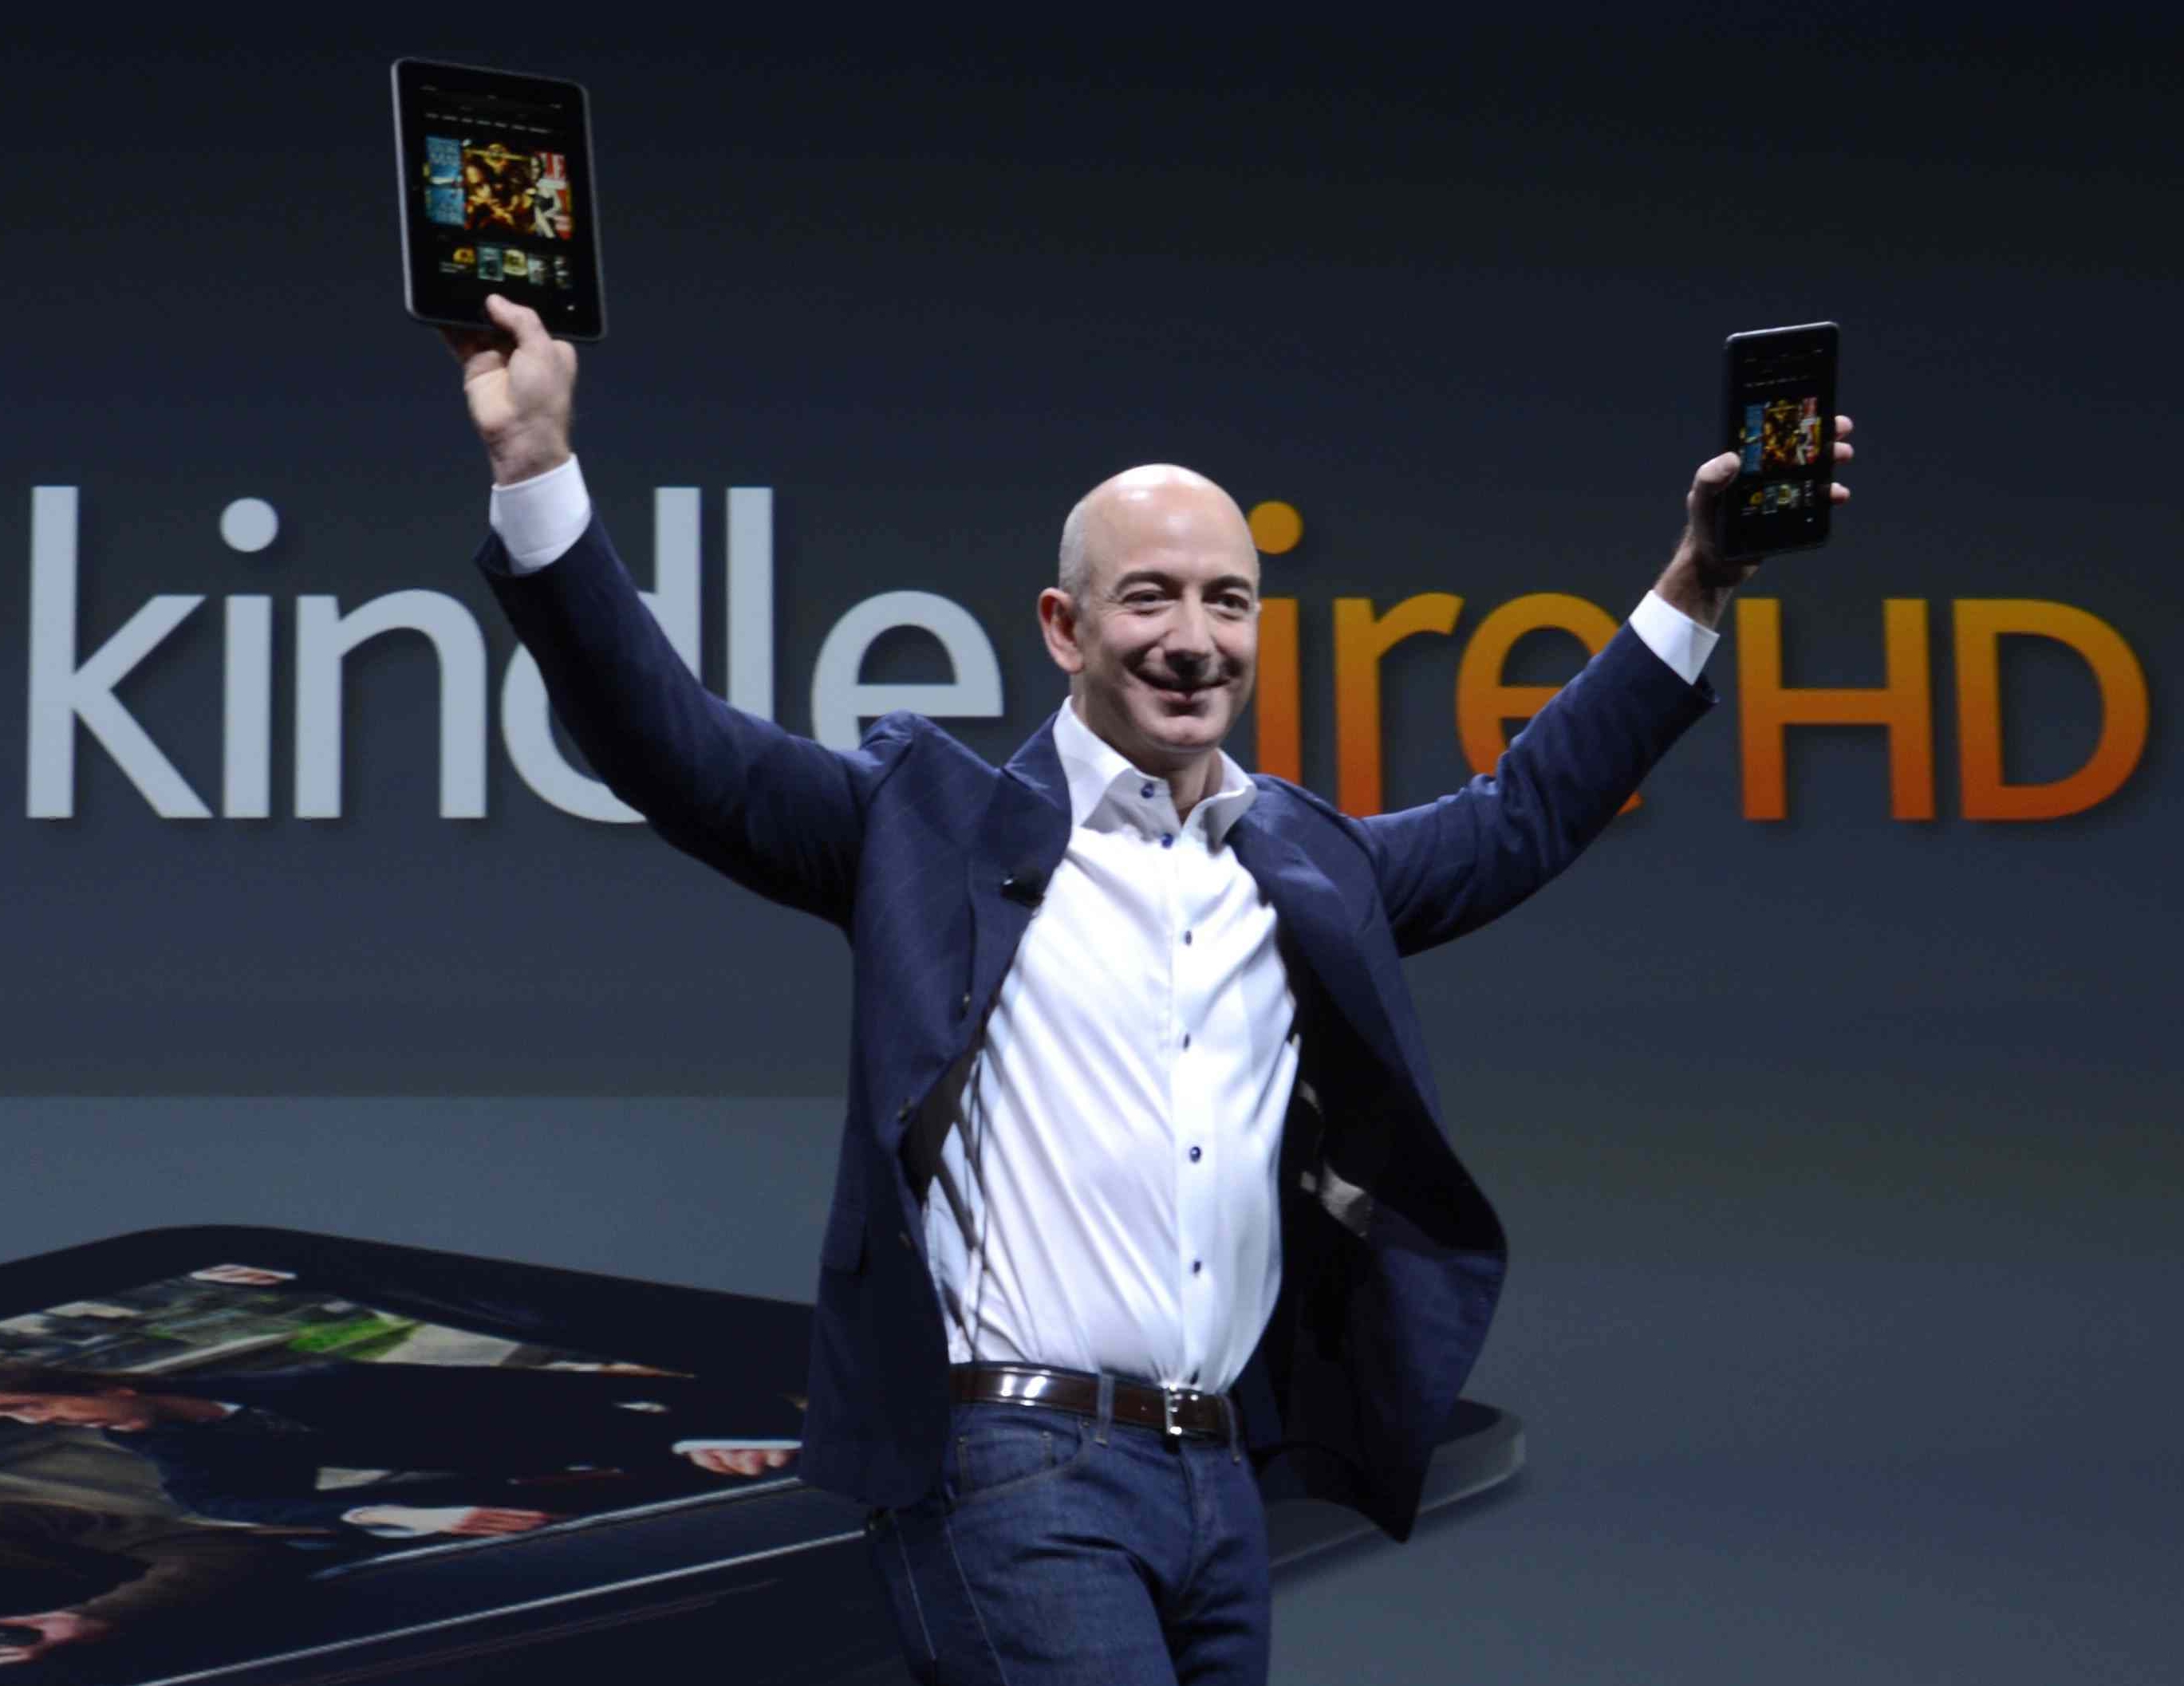 Amazon відома і власними пристроями, які потрапляють на ринок з вражаюче бюджетним цінником: електронна книга   Kindle   , смартфони   Fire Phone   , «Розумна» колонка   Echo   - користувачі по всьому світу знають і з задоволенням використовують мобільні гаджети, створені продавцями книг